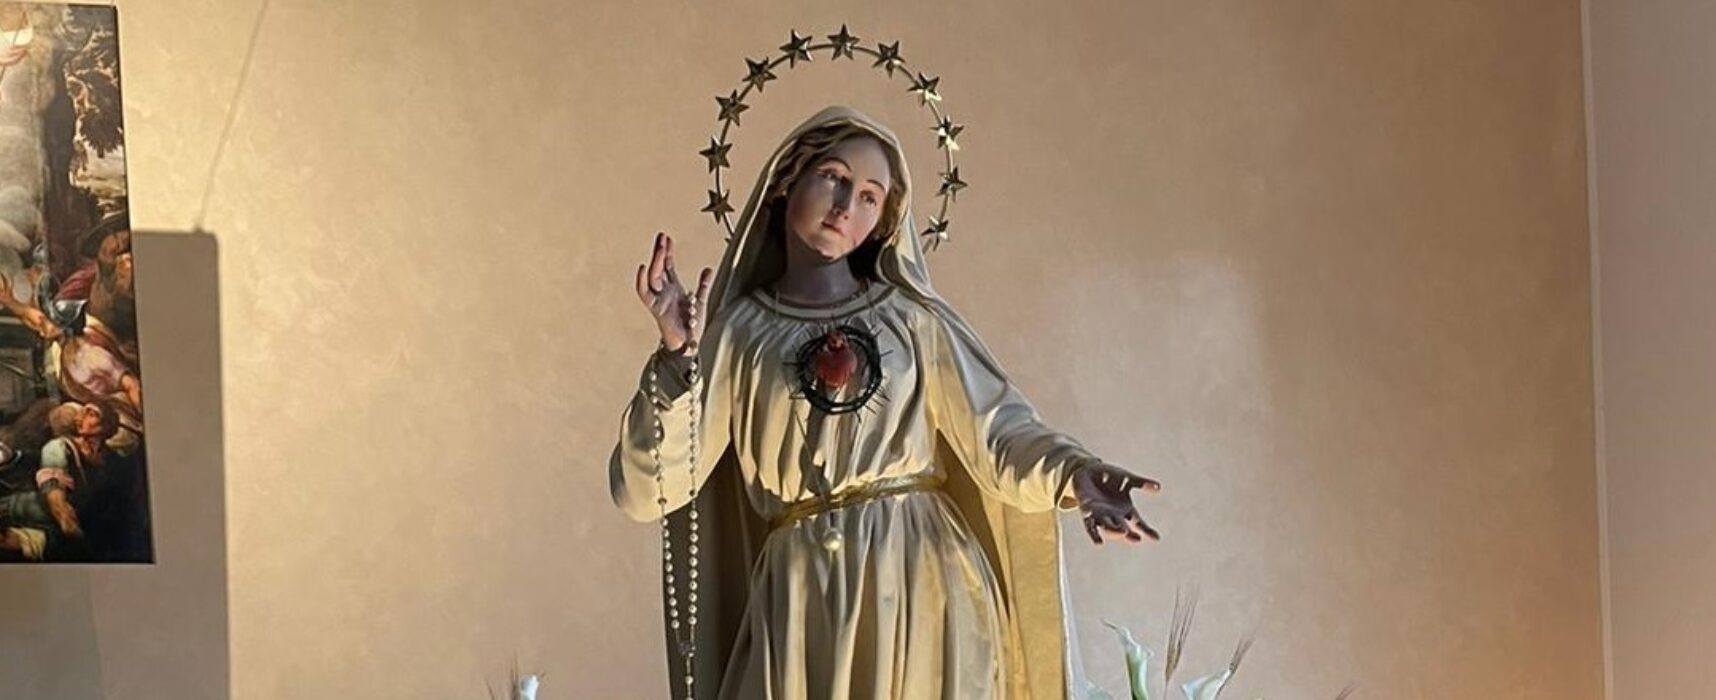 Parrocchia san Pietro, celebrazioni in onore della Madonna di Fatima